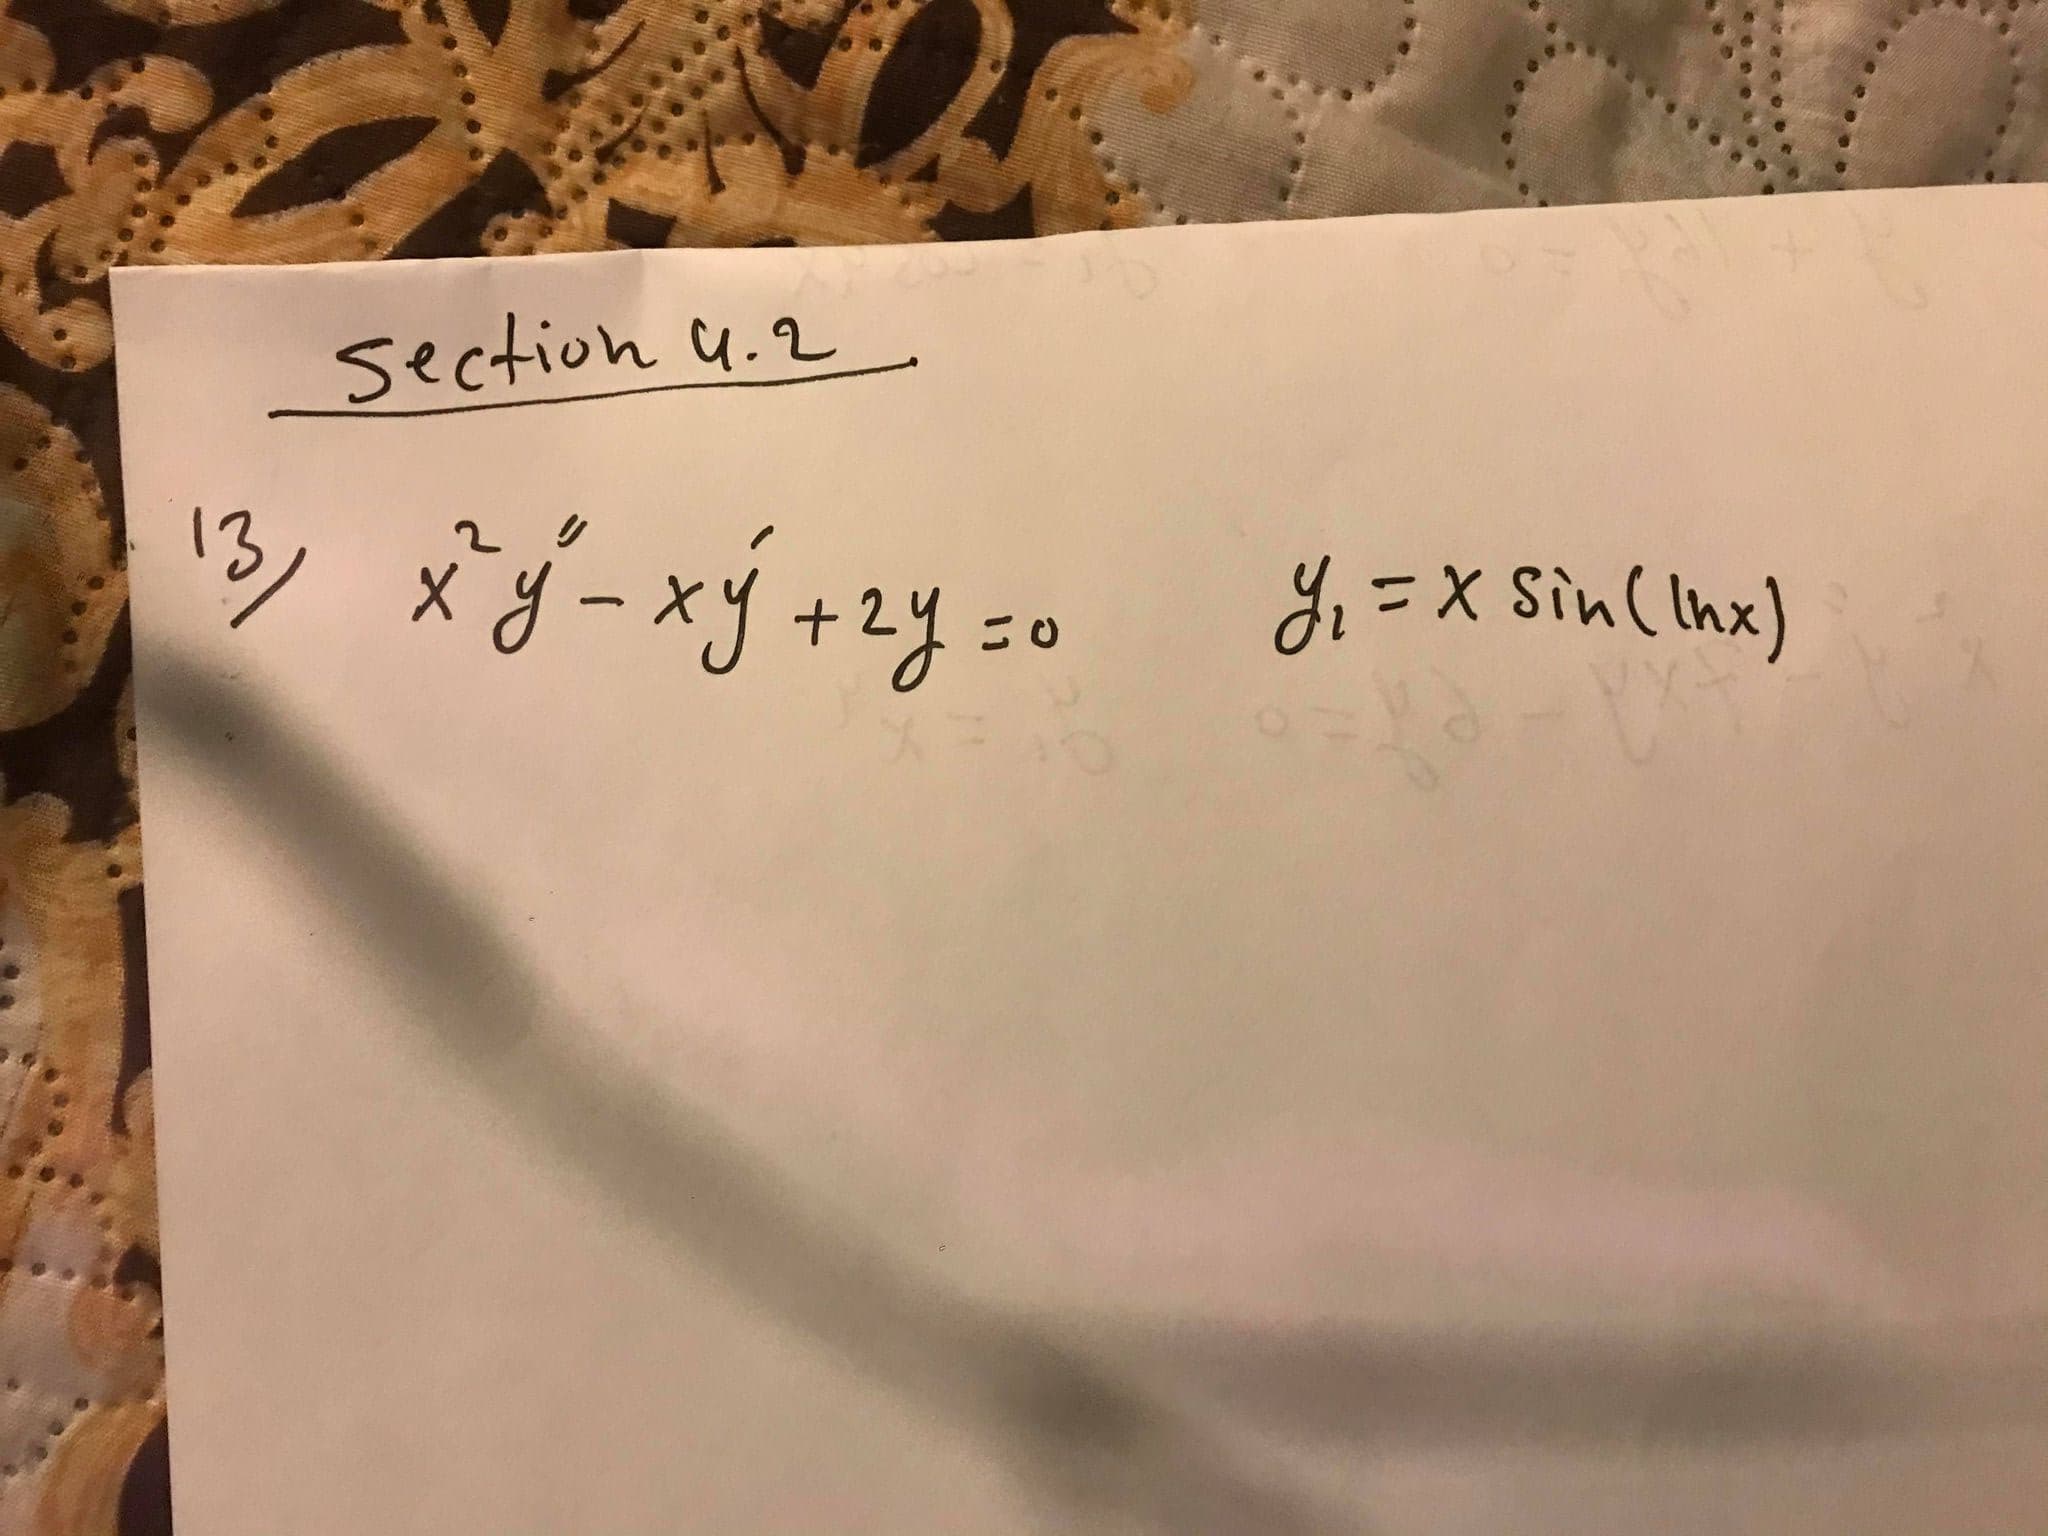 section u.2
13, xj-xý +zy =e
d=x Sin( Inx)
